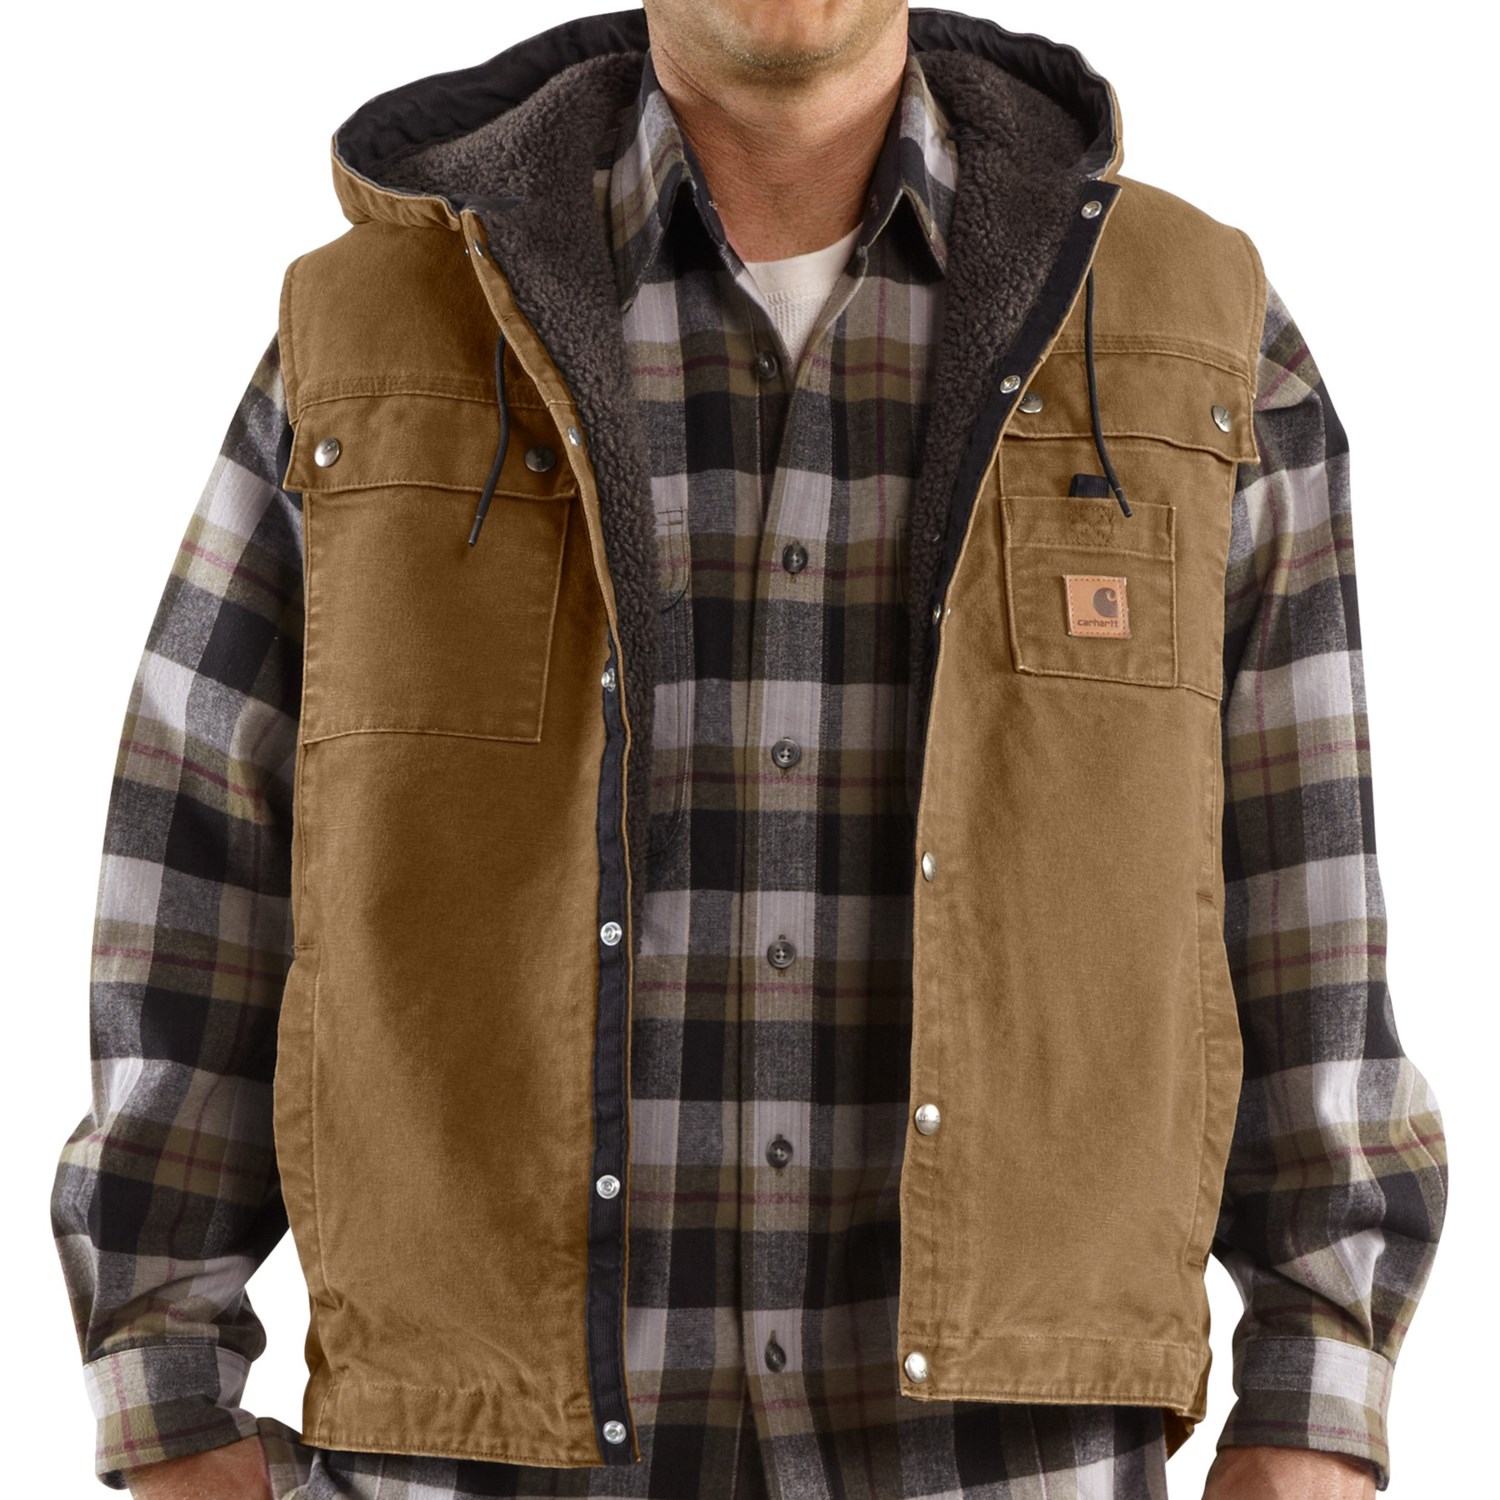 Carhartt Sandstone Multi-Pocket Vest (For Big Men)